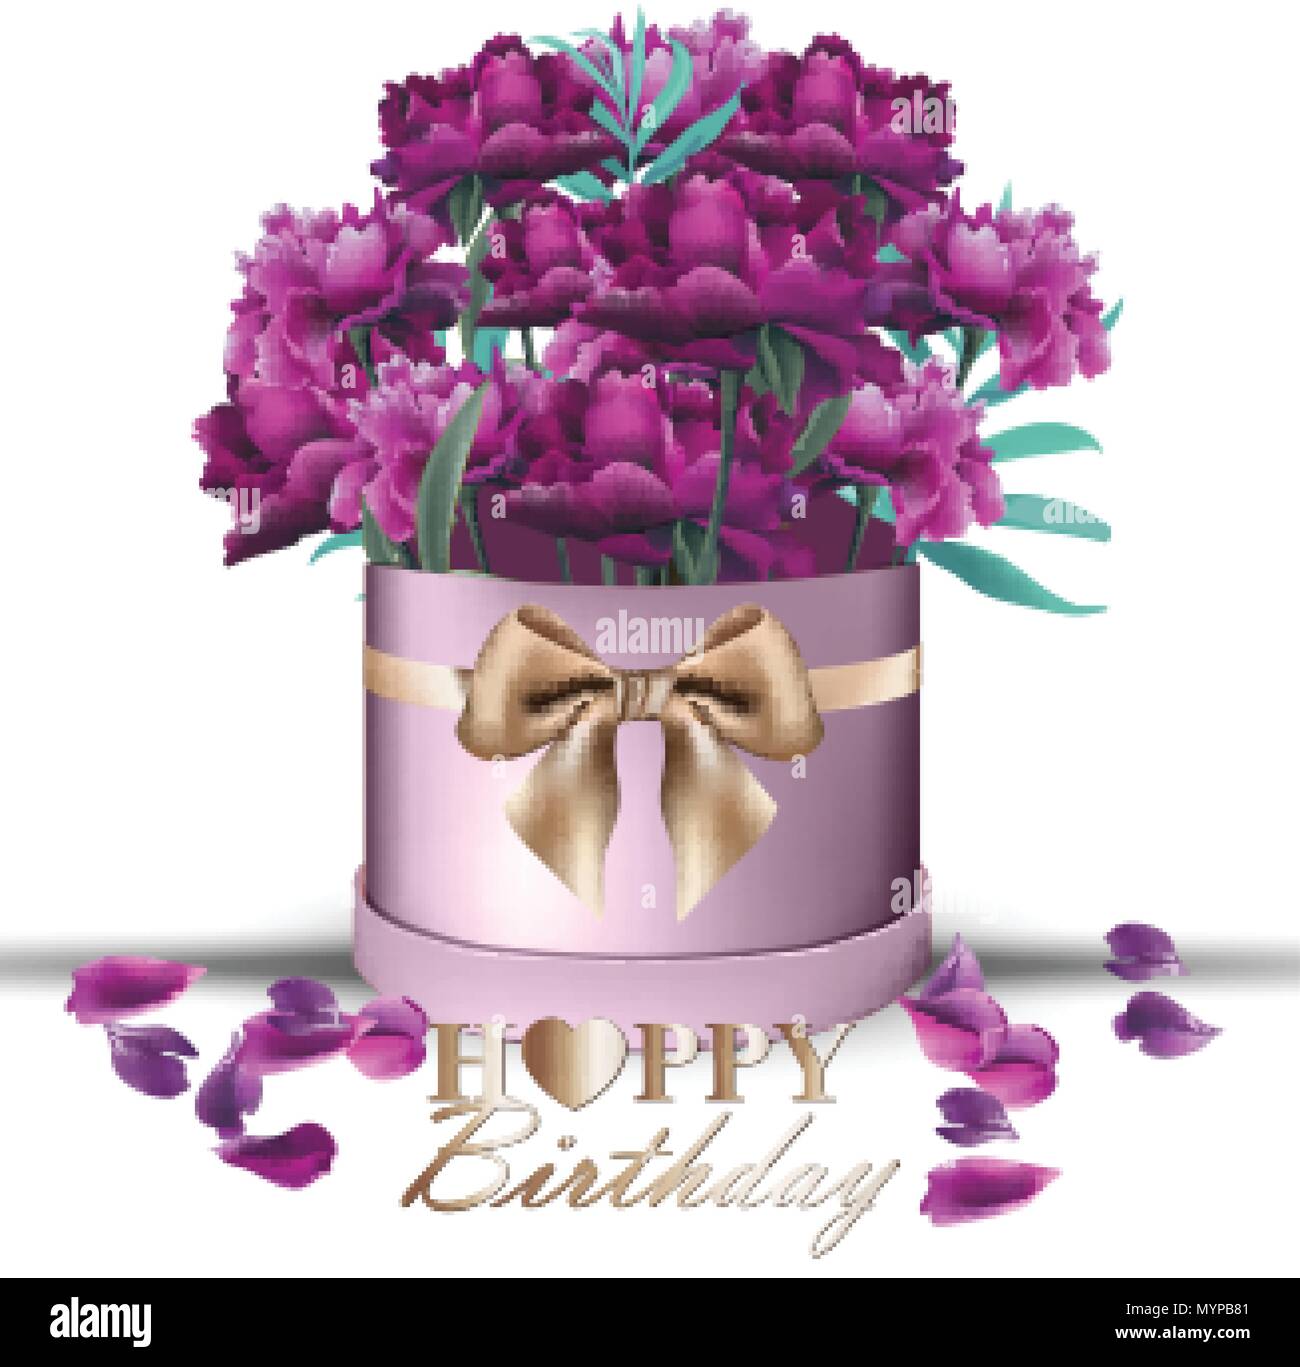 Joyeux Anniversaire Bouquet De Fleurs De Pivoine Vecteur De Carte Vintage Boite Cadeau Beau Decor Floral Couleur Ultra Violet Image Vectorielle Stock Alamy